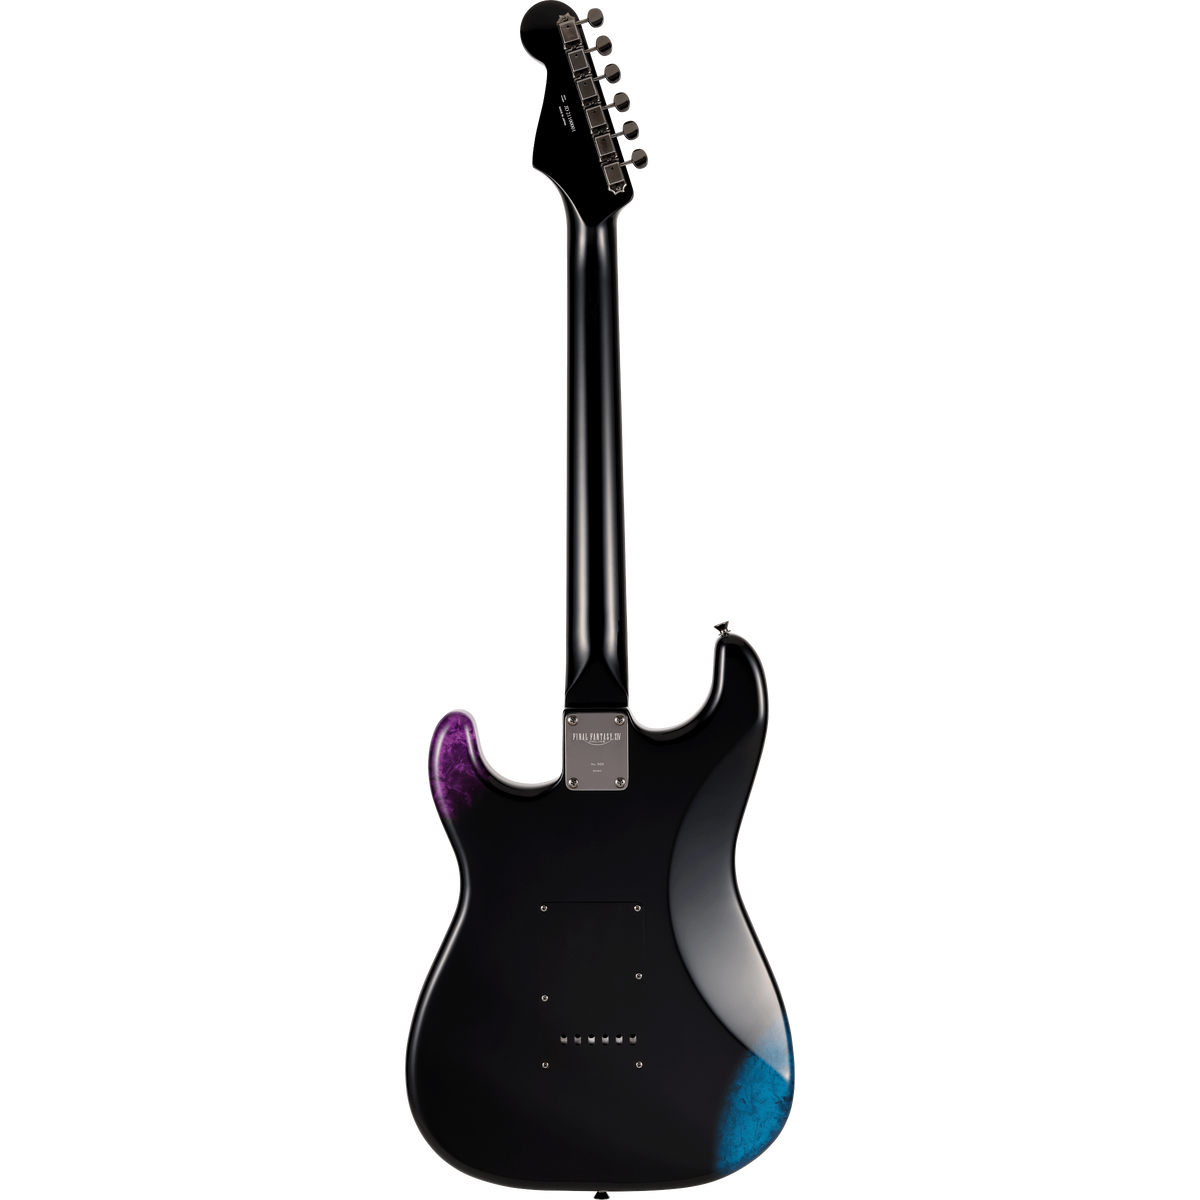 Fender 560-1000-899 Limited Edition MIJ Final Fantasy XIV Strat